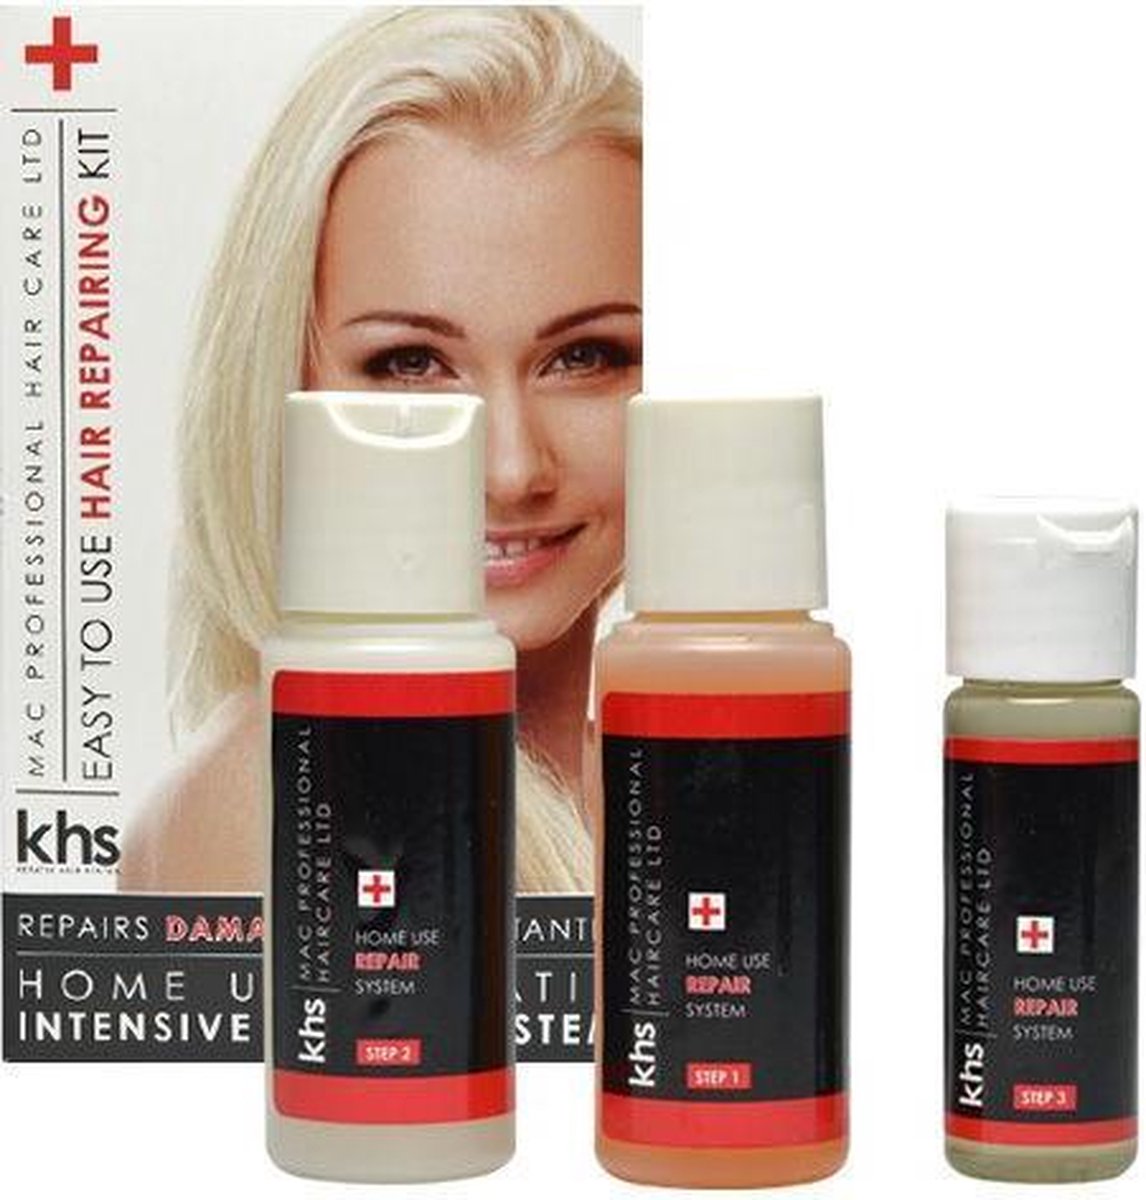 KHS Keratin Home System Hair Repair System Kit